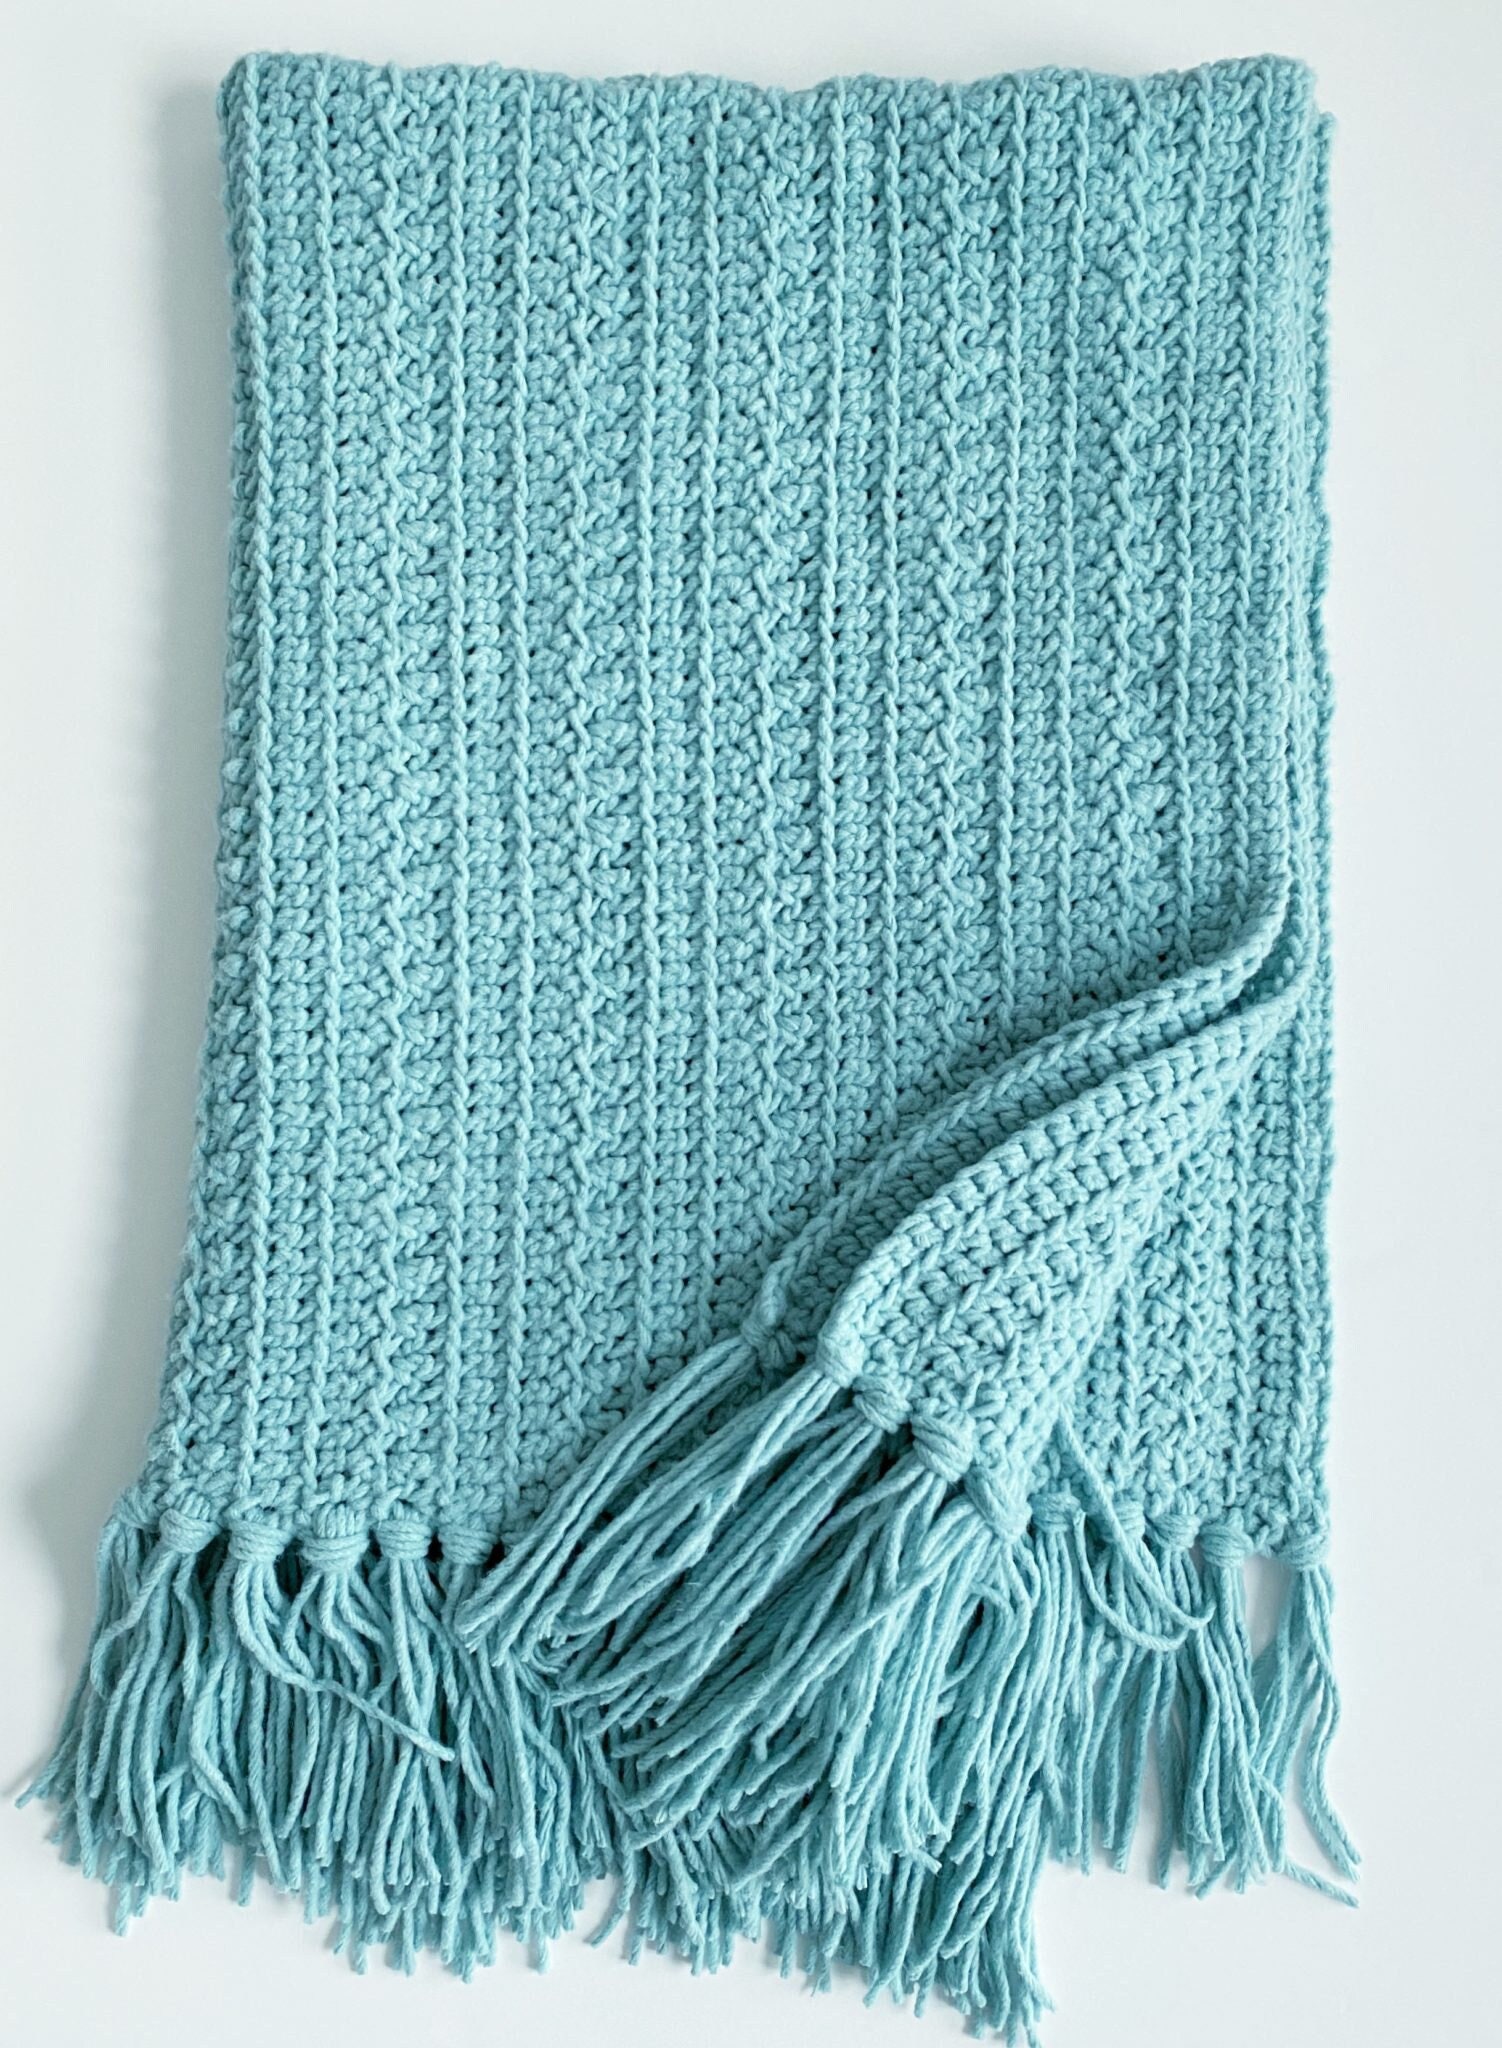 Bernat Forever Fleece blanket yarn let me down :( : r/knitting